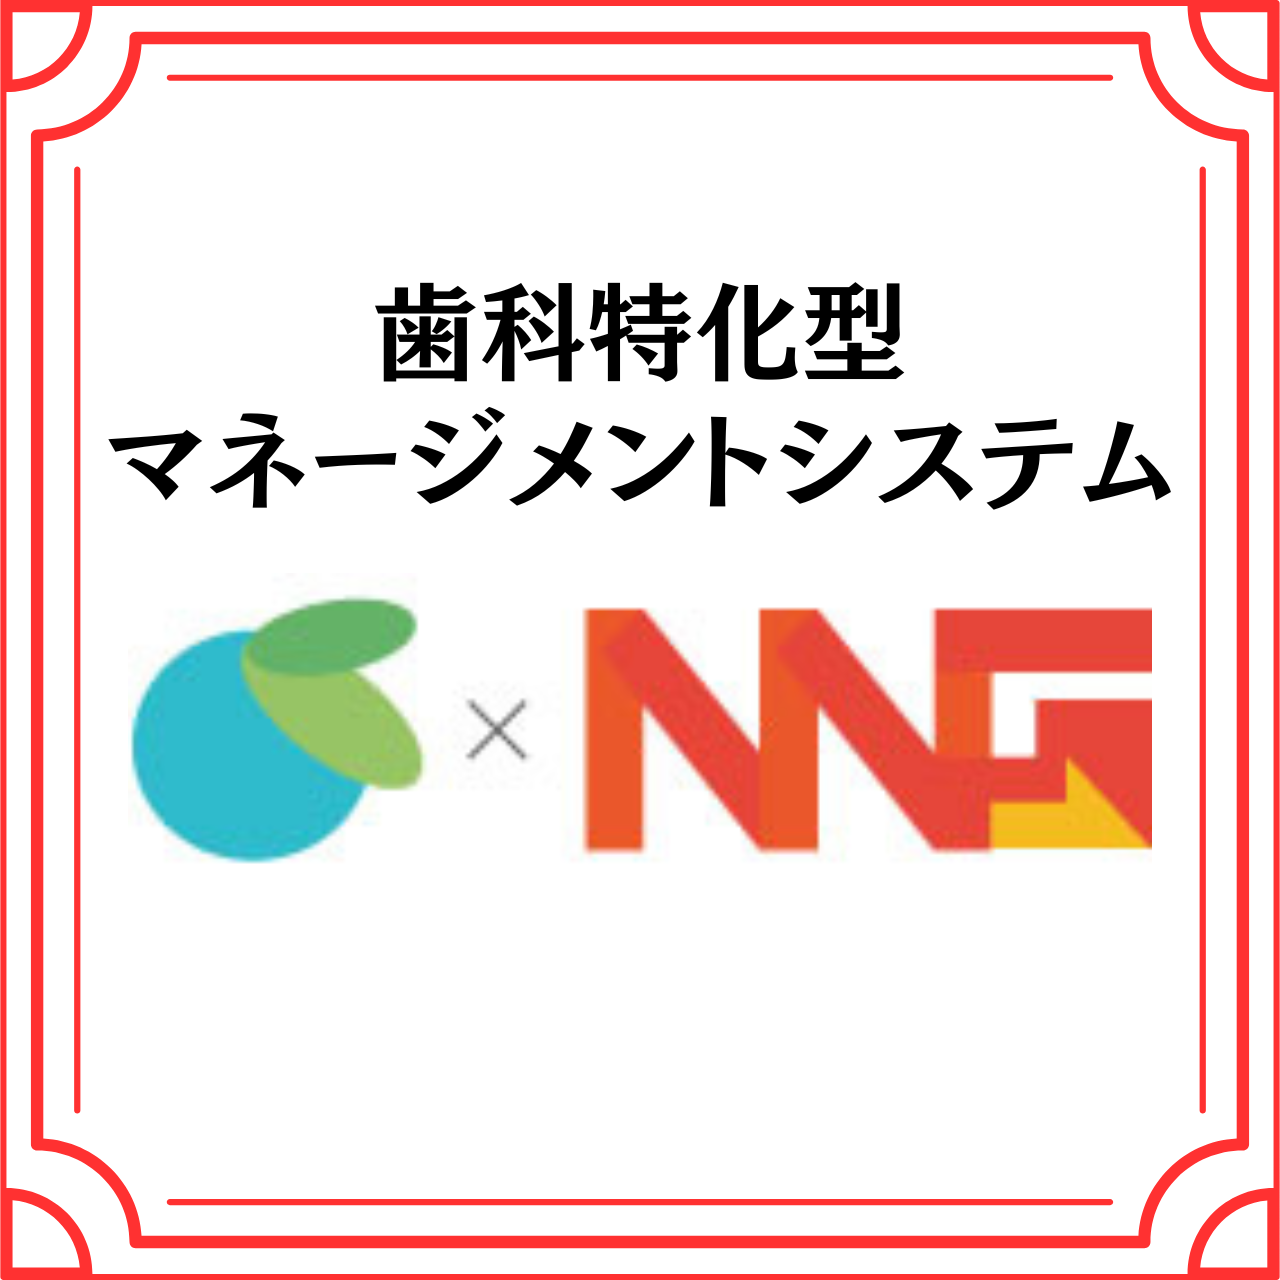 歯科特化型マネージメントシステム(株式会社NNG)